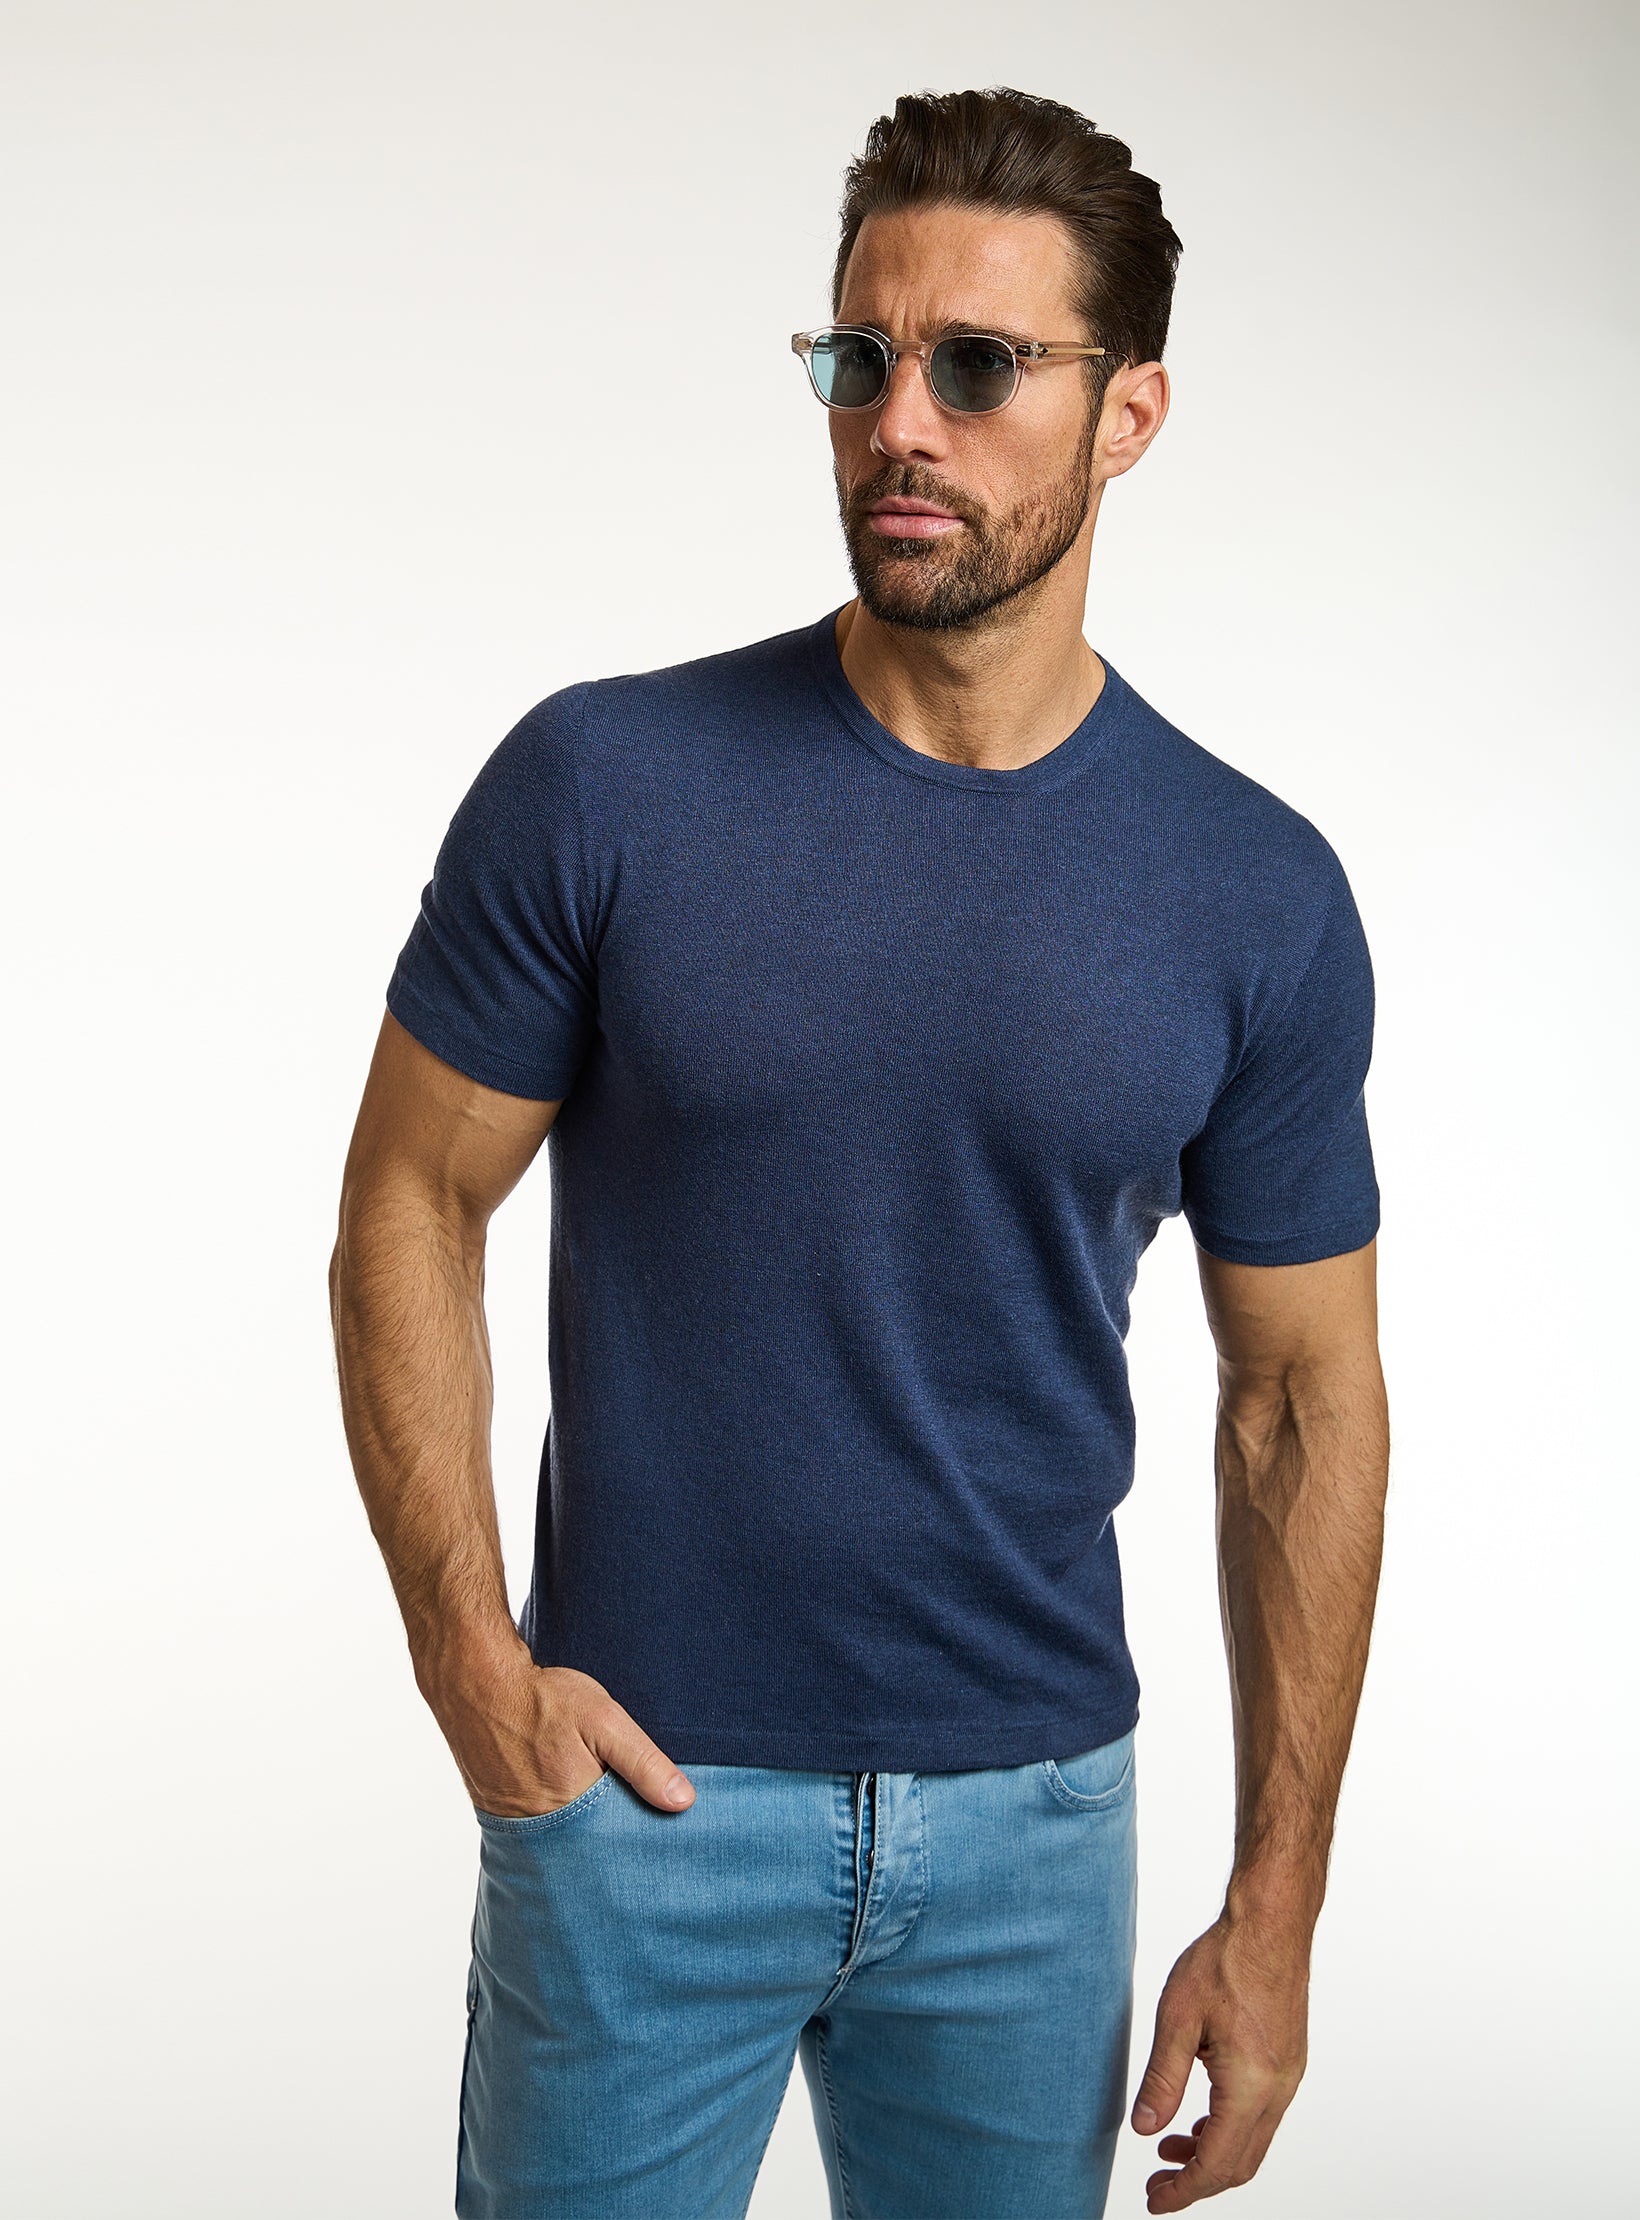 Premium Cotton & Cashmere T-Shirt Knit Consiglieri